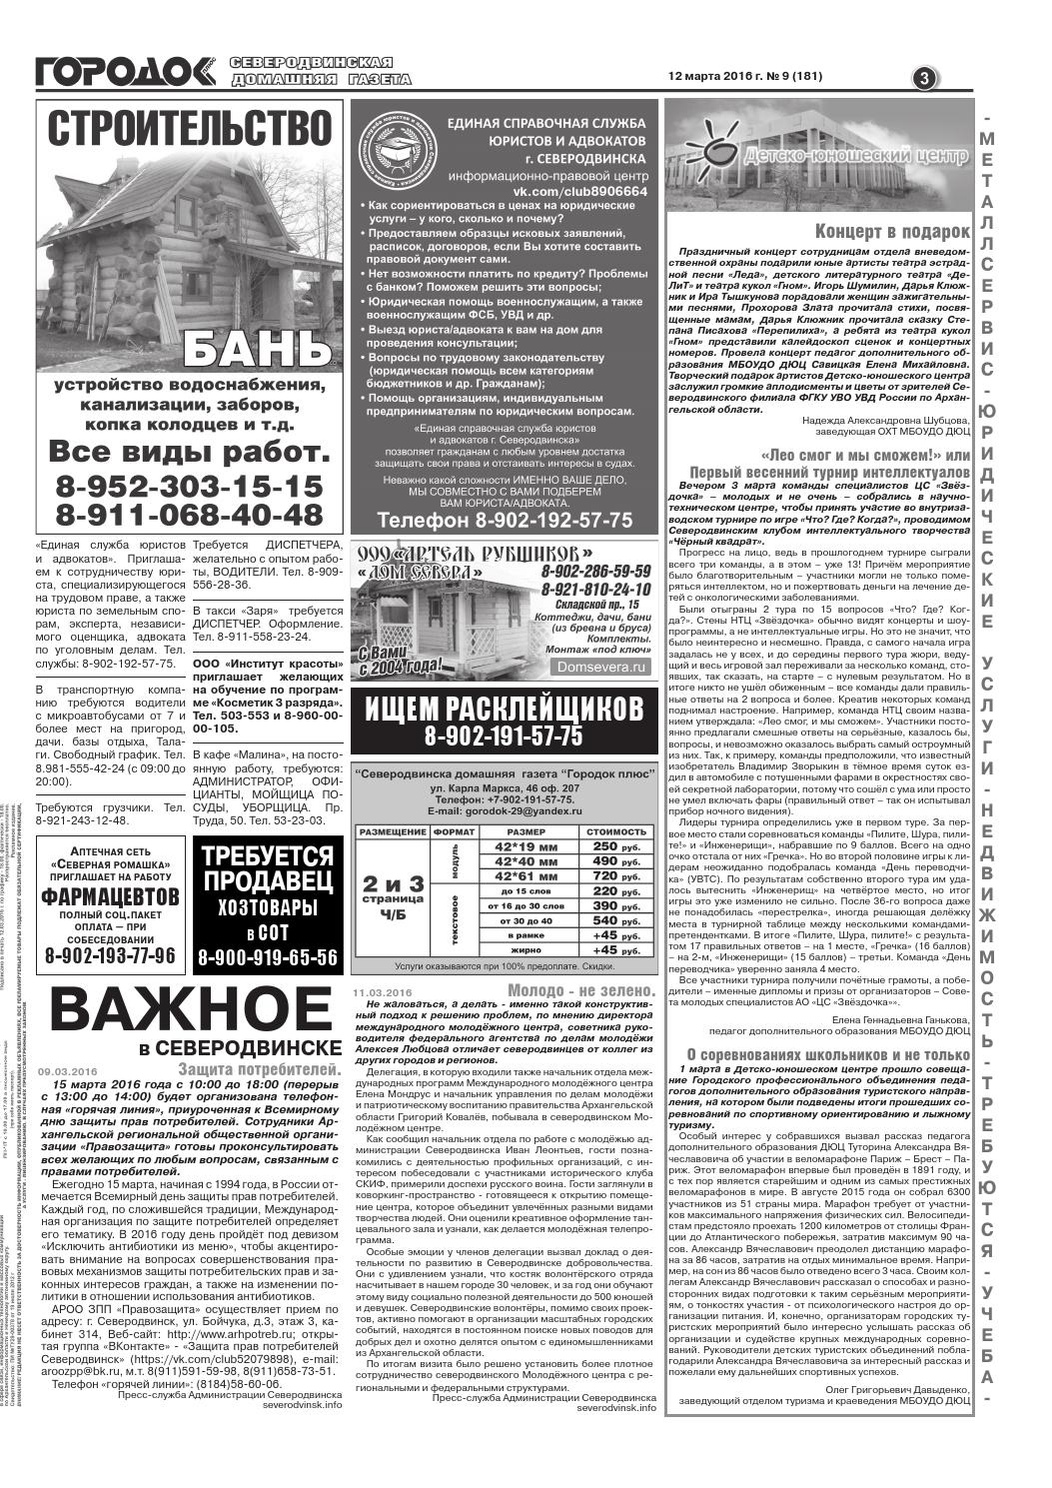 Городок плюс, выпуск номер 9 от 12 марта 2016 года, страница 3.